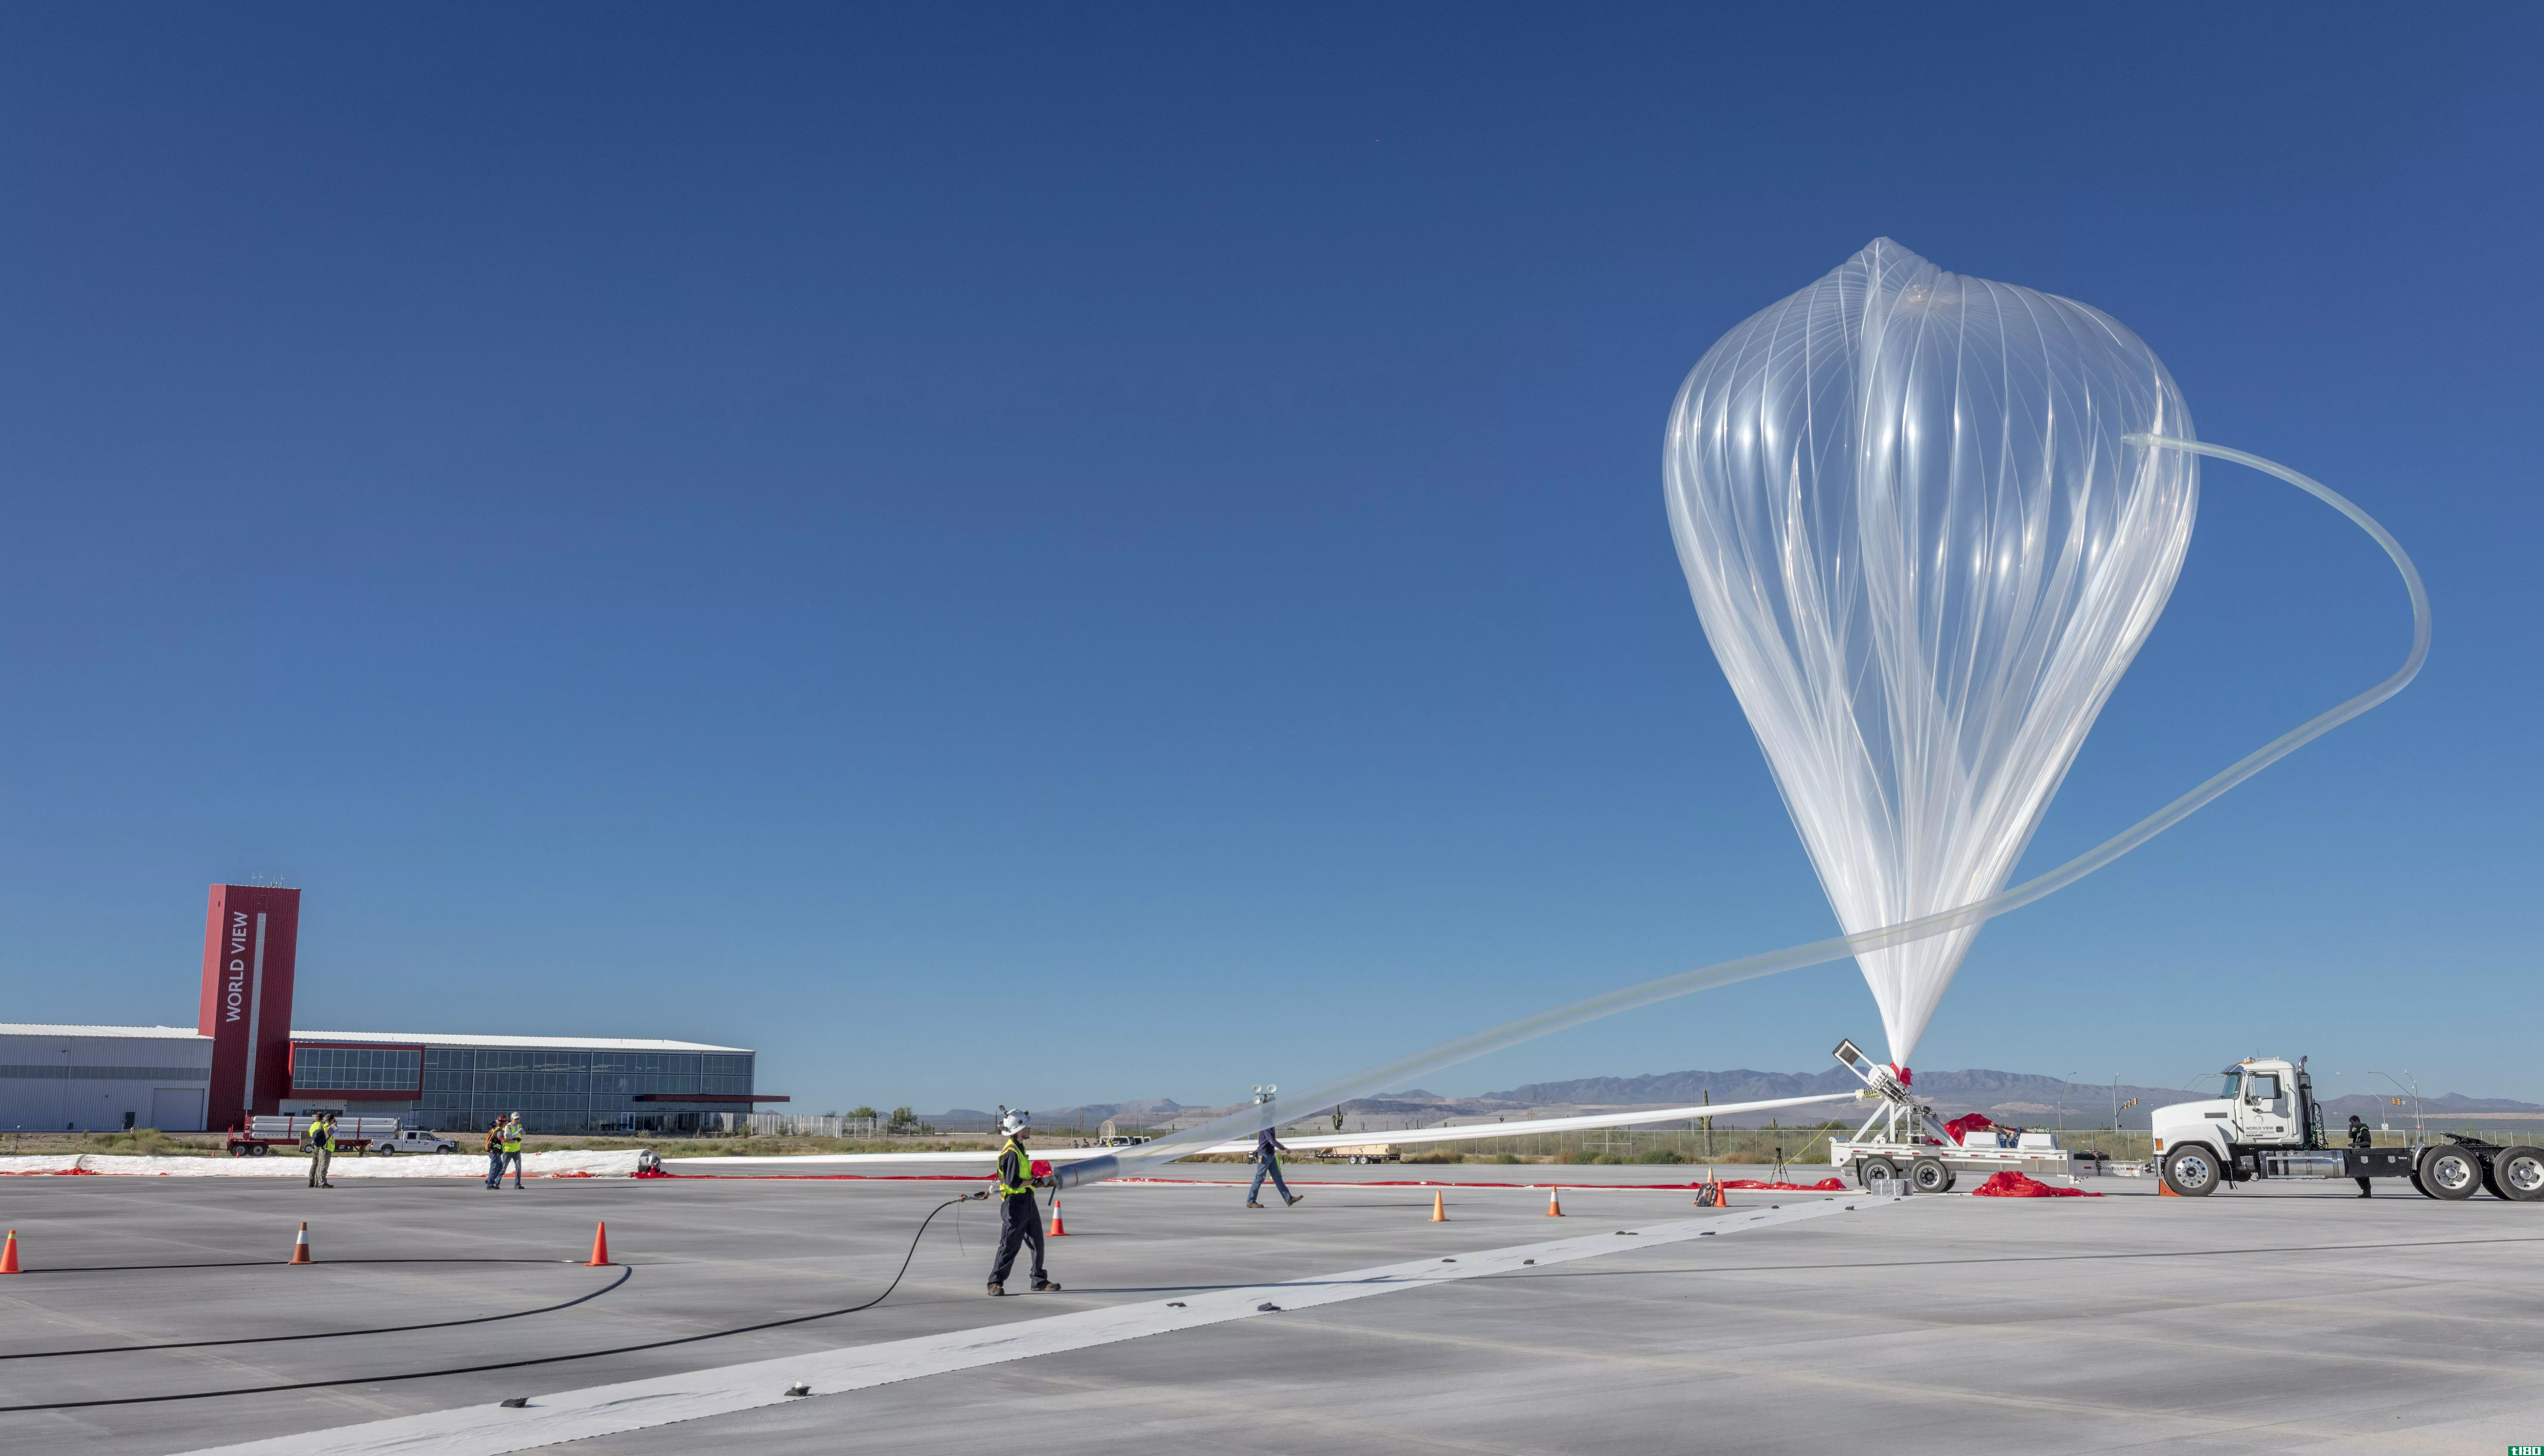 模拟卫星的高空气球完成了迄今为止最长的飞行